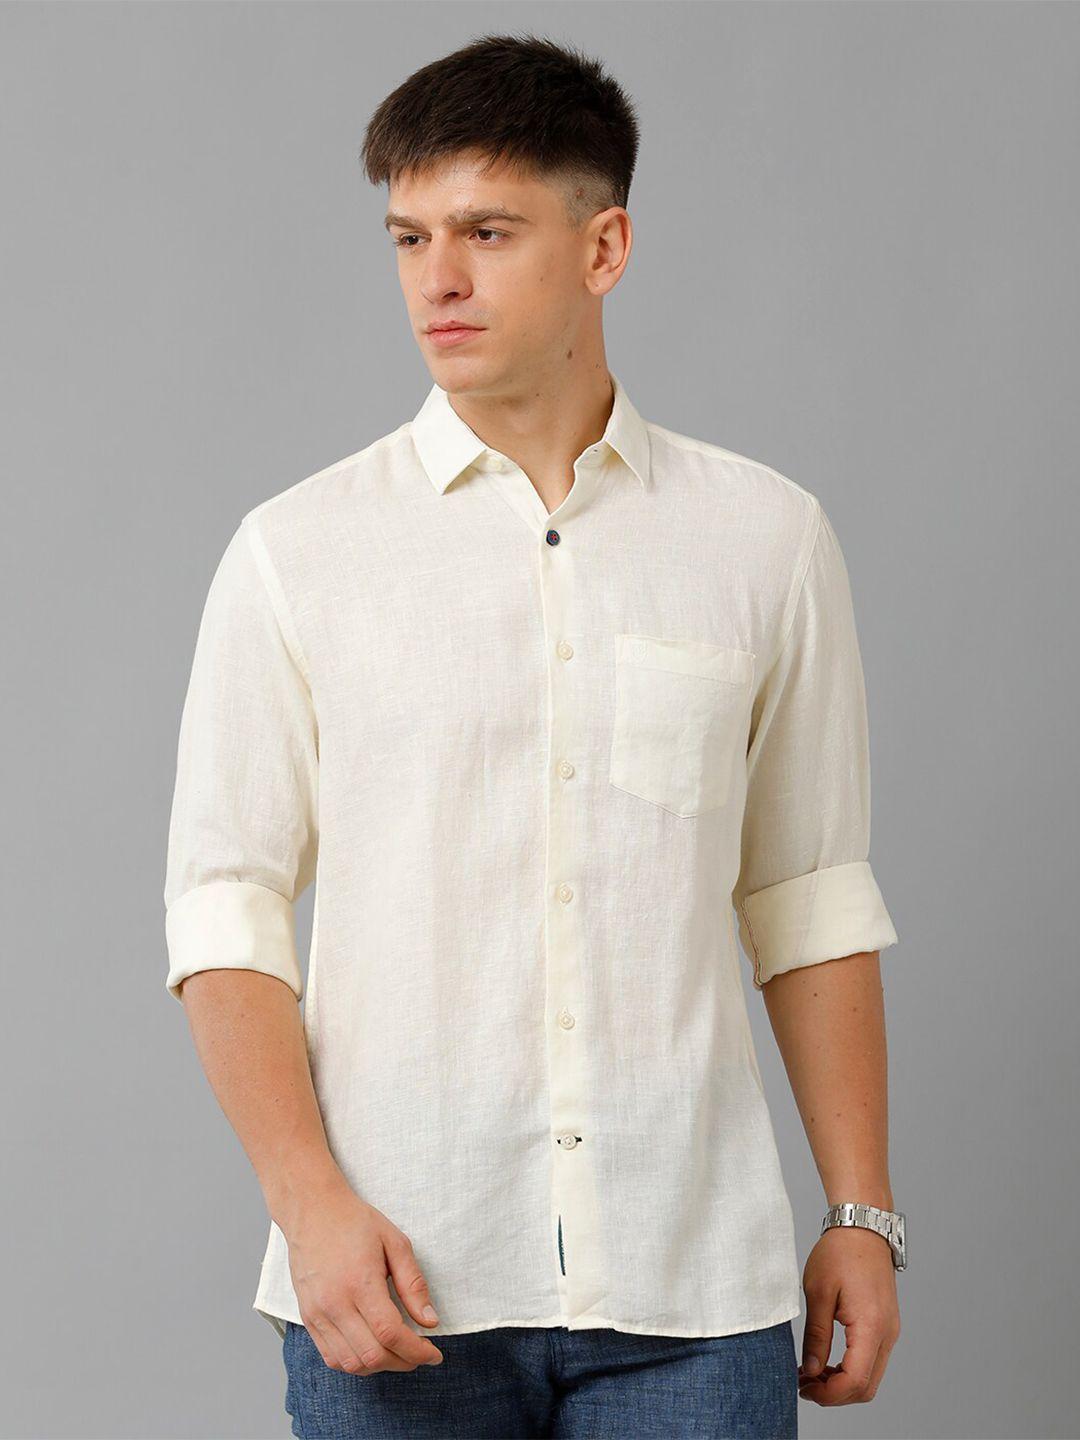 linen club spread collar pure linen casual shirt